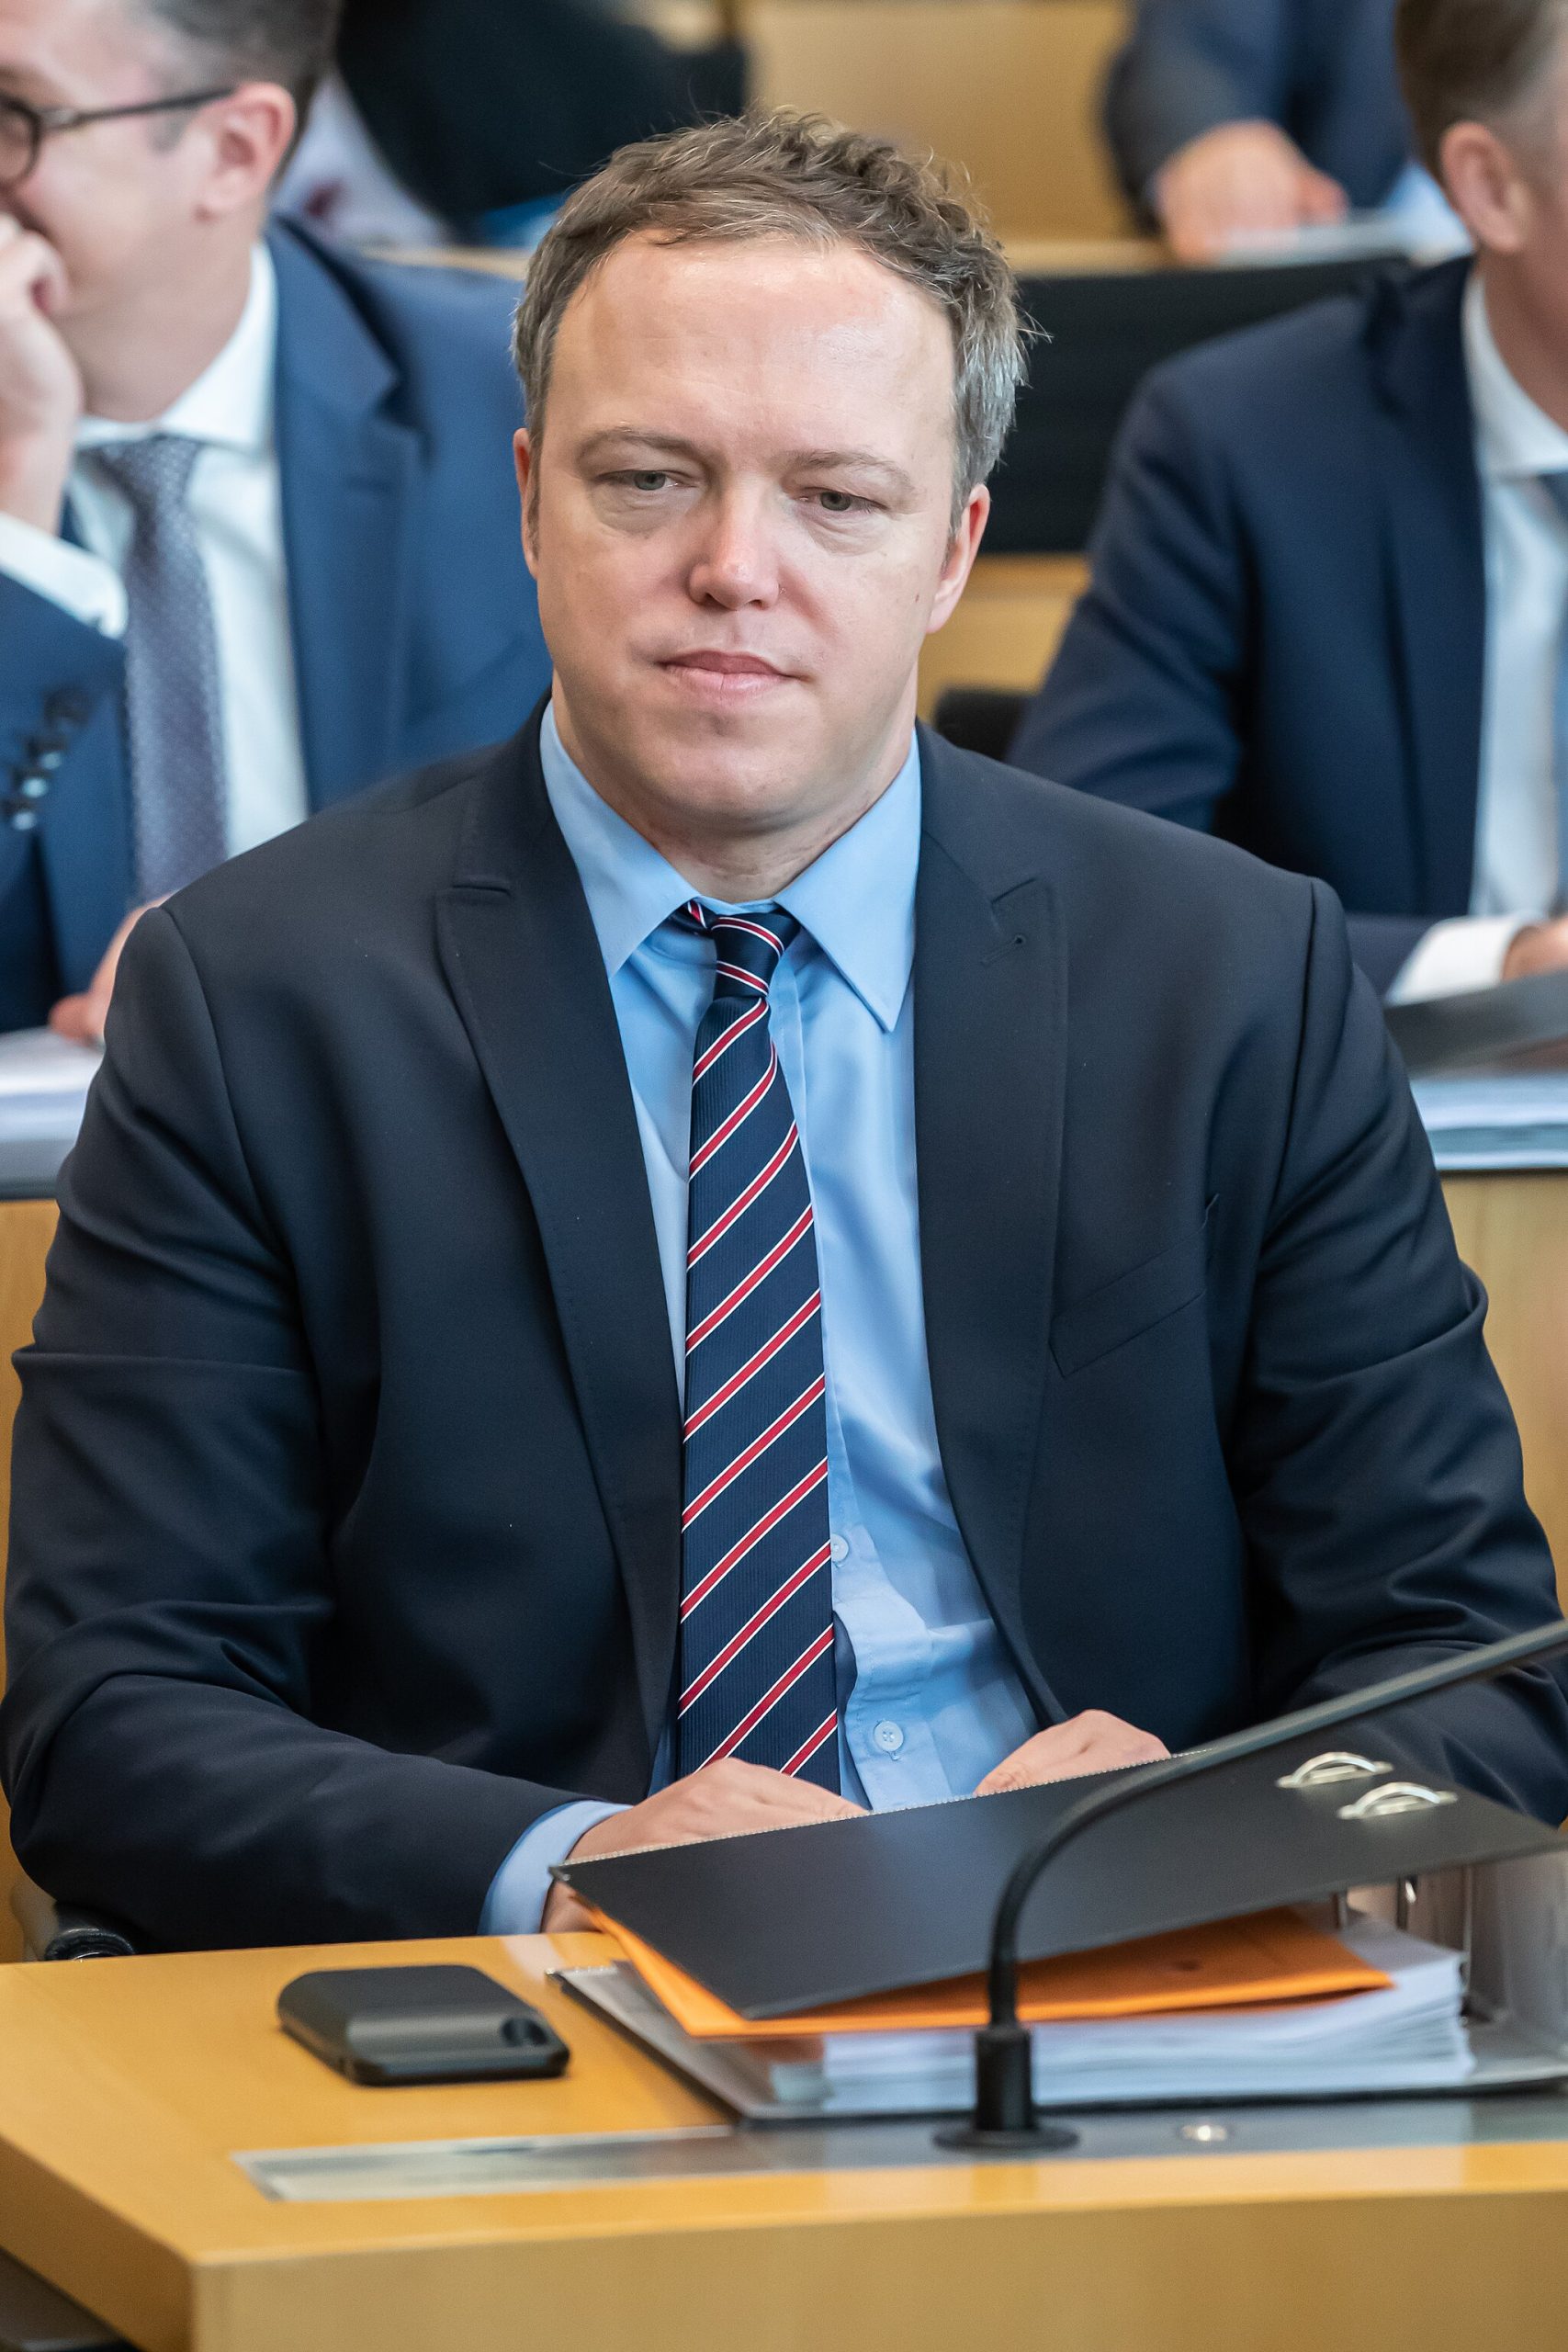 Bild: Steffen Prößdorf, 2020-03-04 Thüringer Landtag, erneute Wahl des Ministerpräsidenten 1DX 2768 by Stepro, CC BY-SA 4.0via Wikimedia Commons (keine Änderungen vorgenommen)